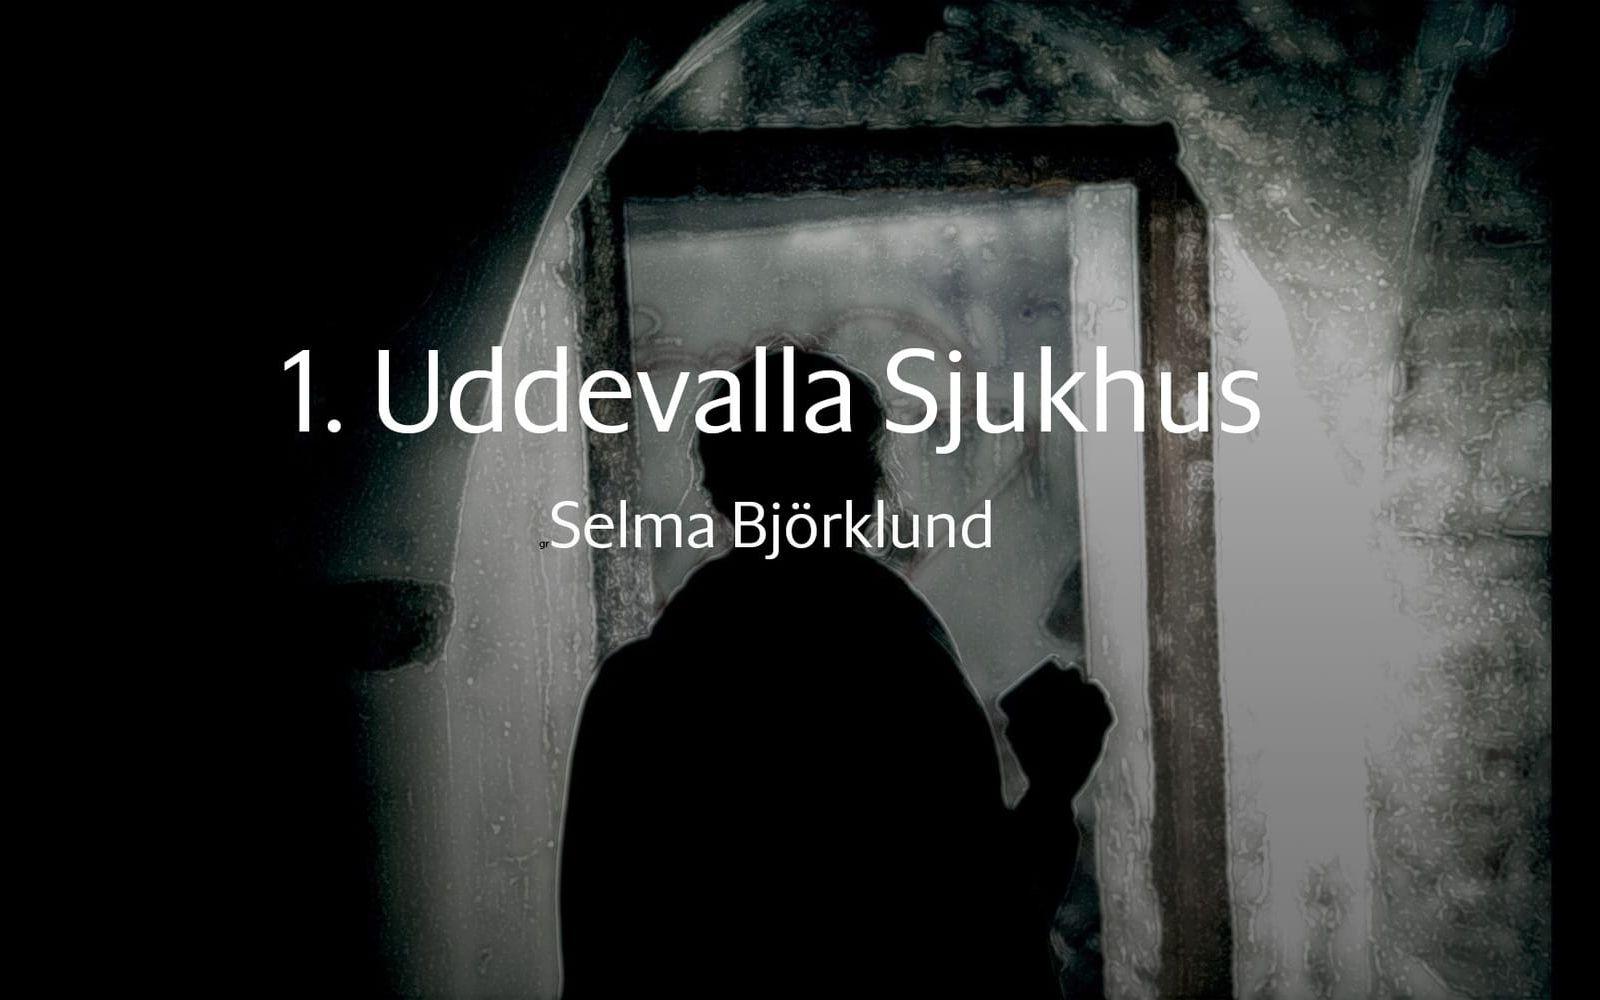 Första bidraget heter Uddevalla sjukhus och är skriven av Selma Björklund från Tanumshede. 